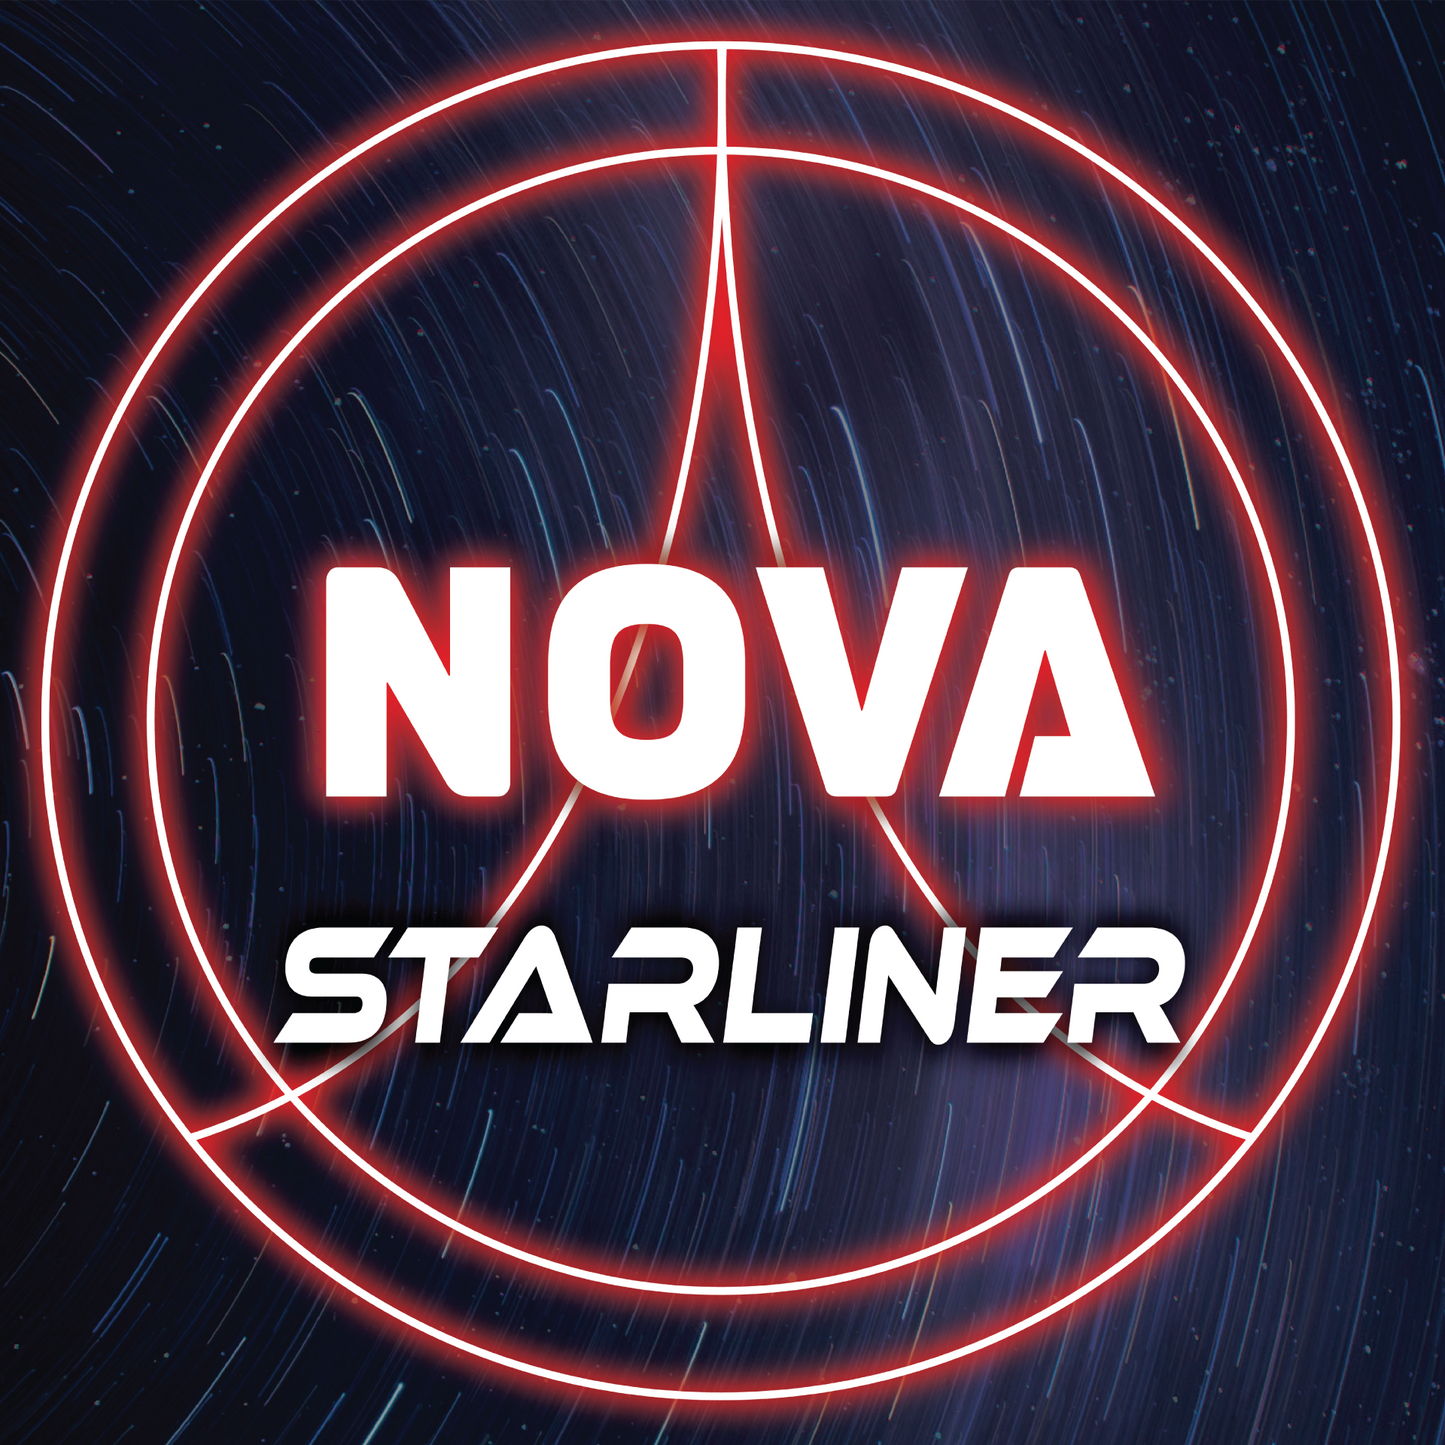 Starliner - Nova